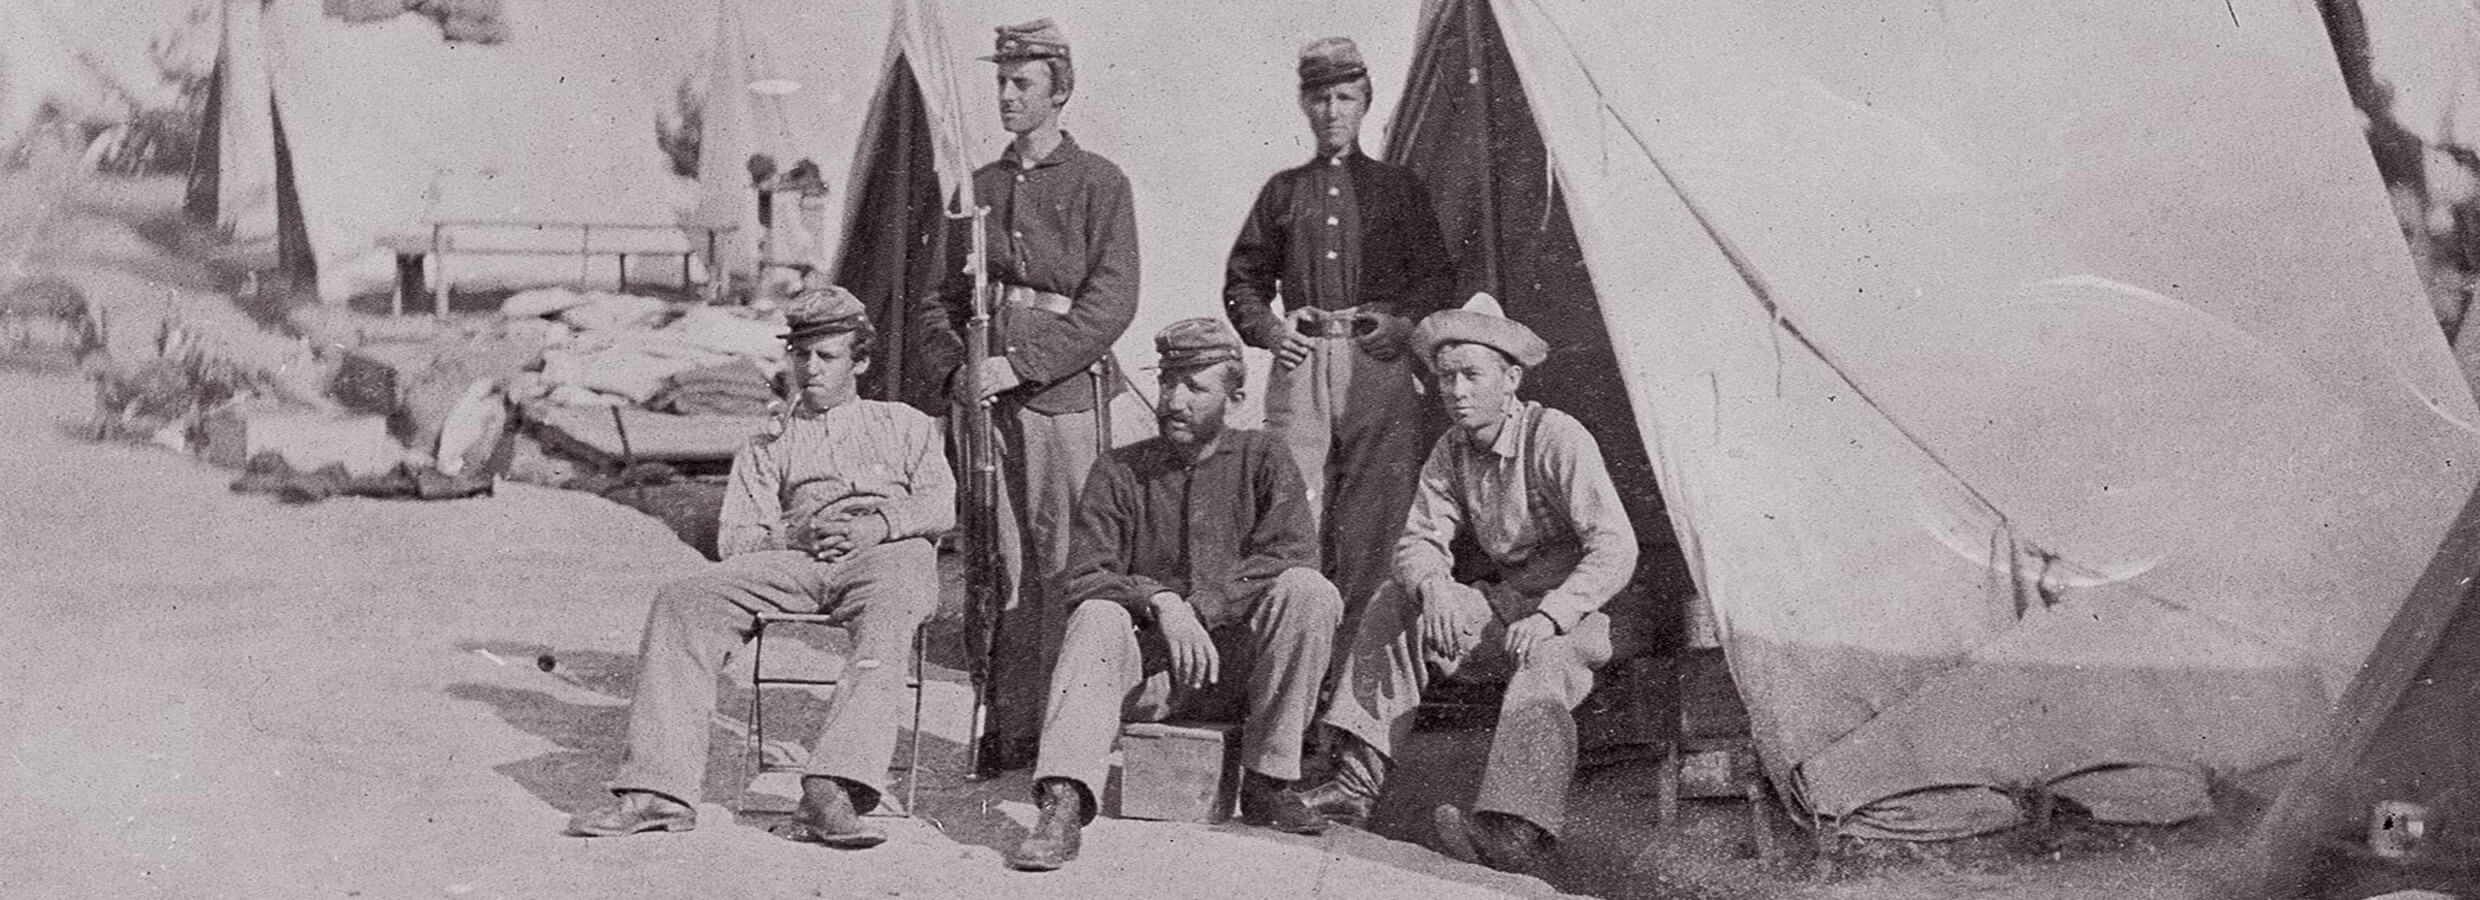 1862 NY Militia five men in front of a tent